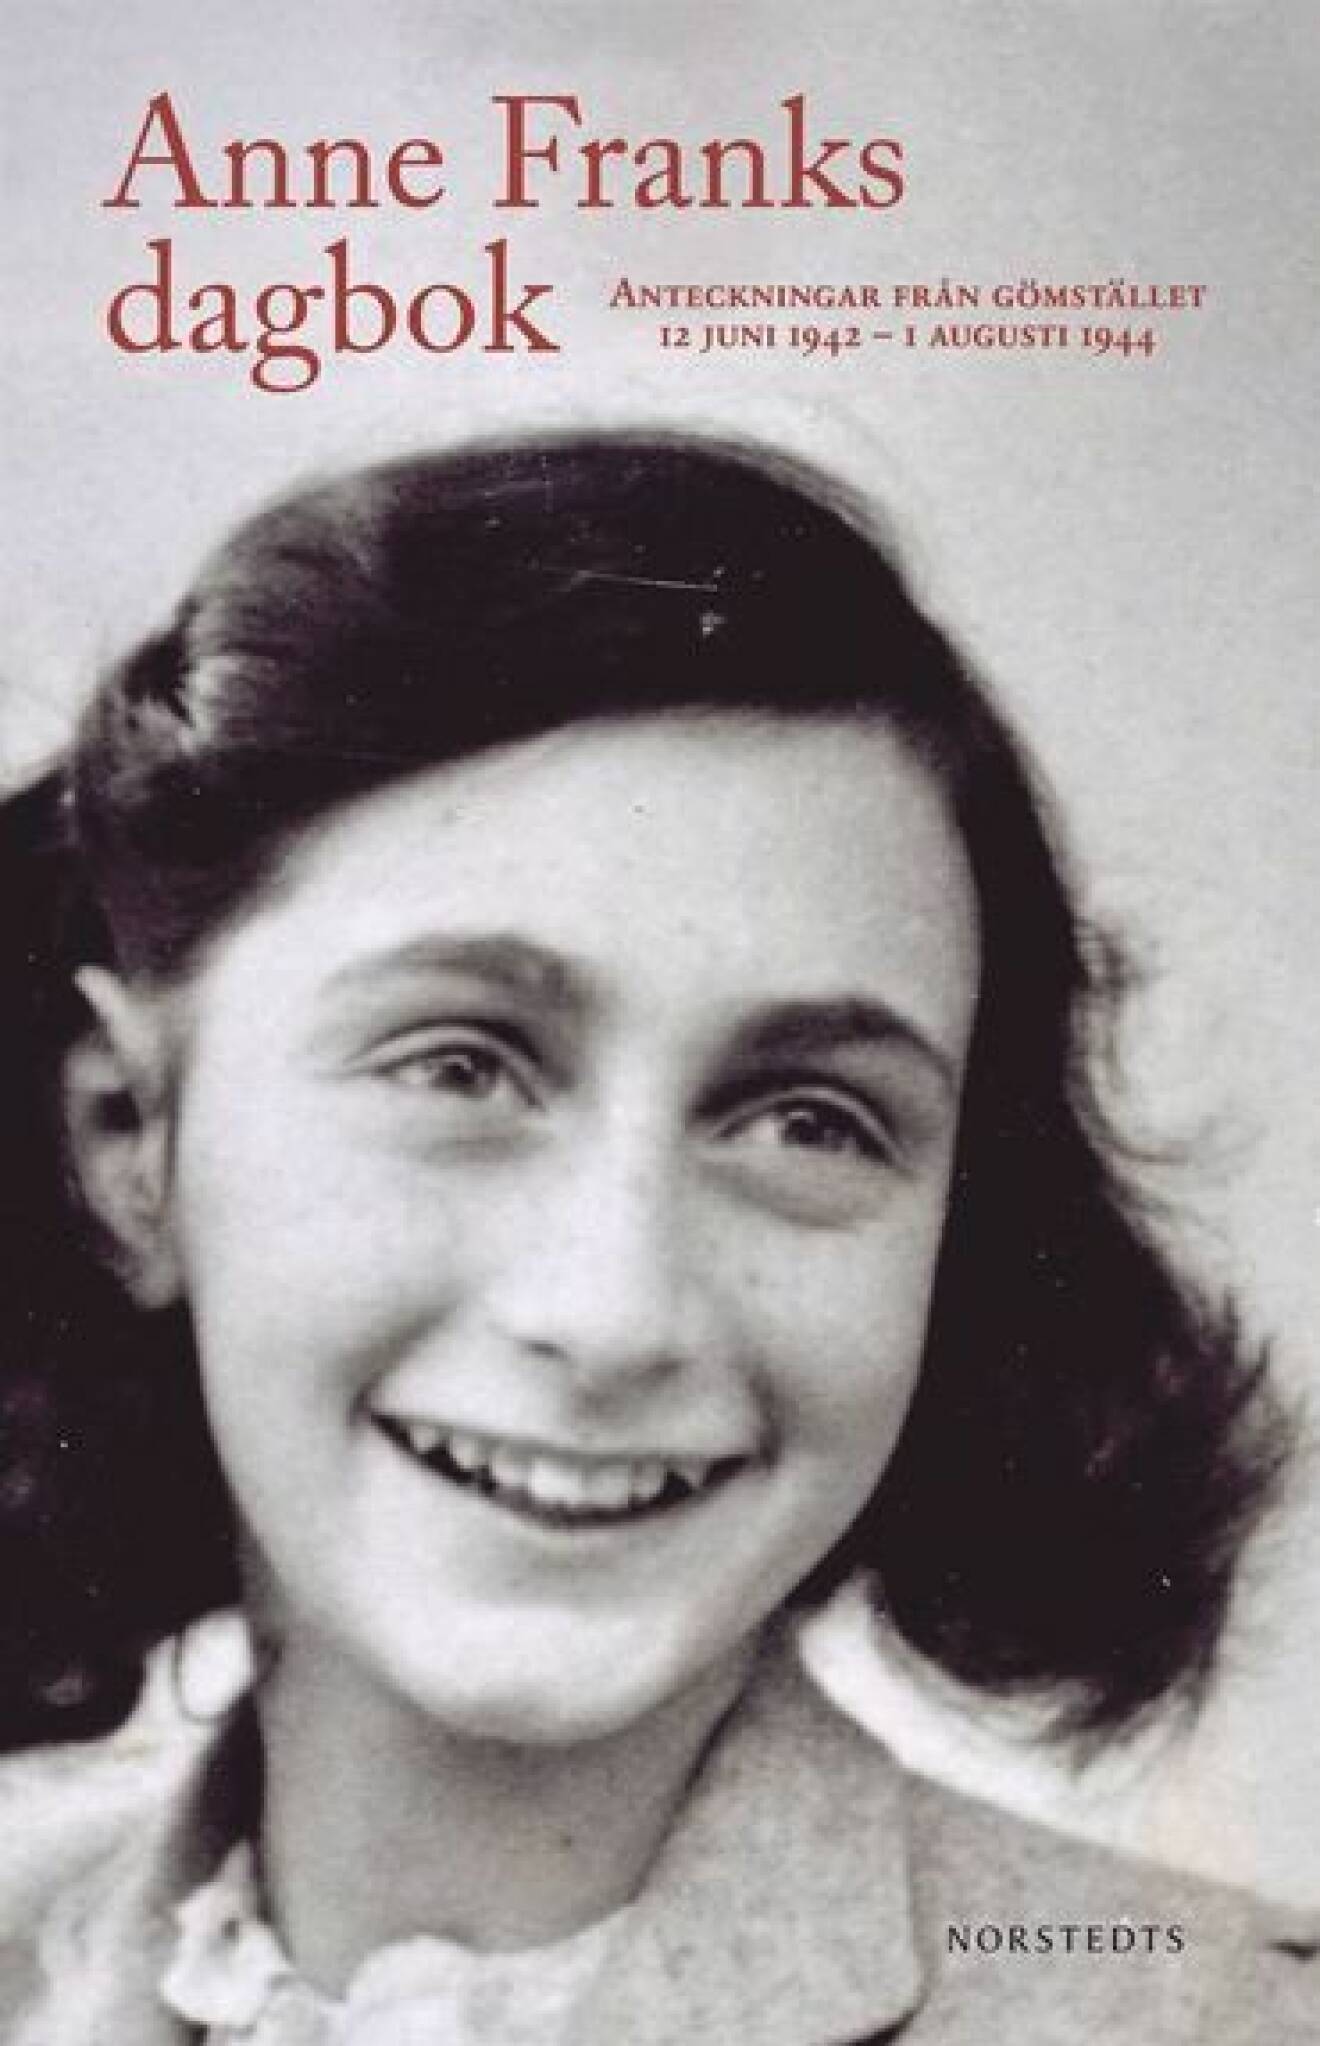 Bildomslag till Anne Franks Dagbok- Bild på Anne Franks.